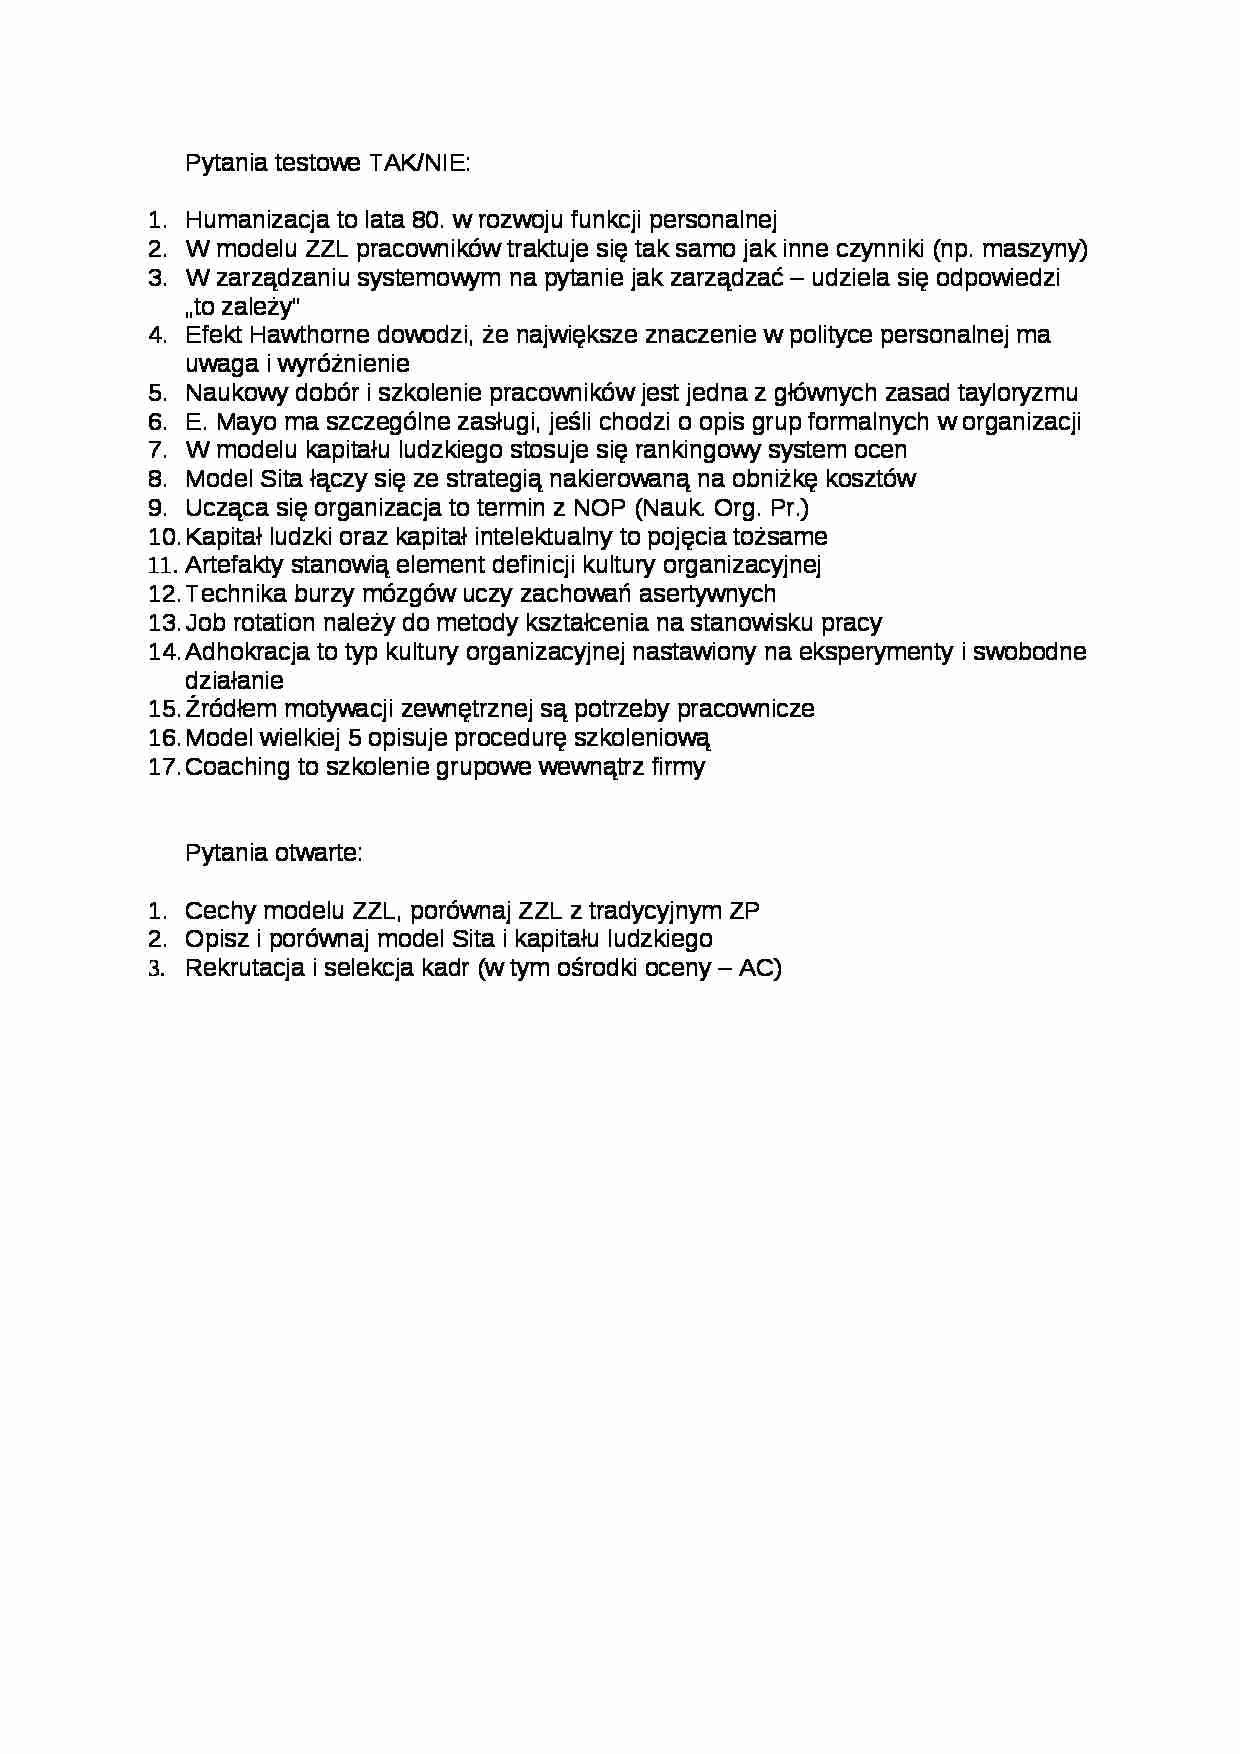 Zarządzanie - pytania testowe - strona 1